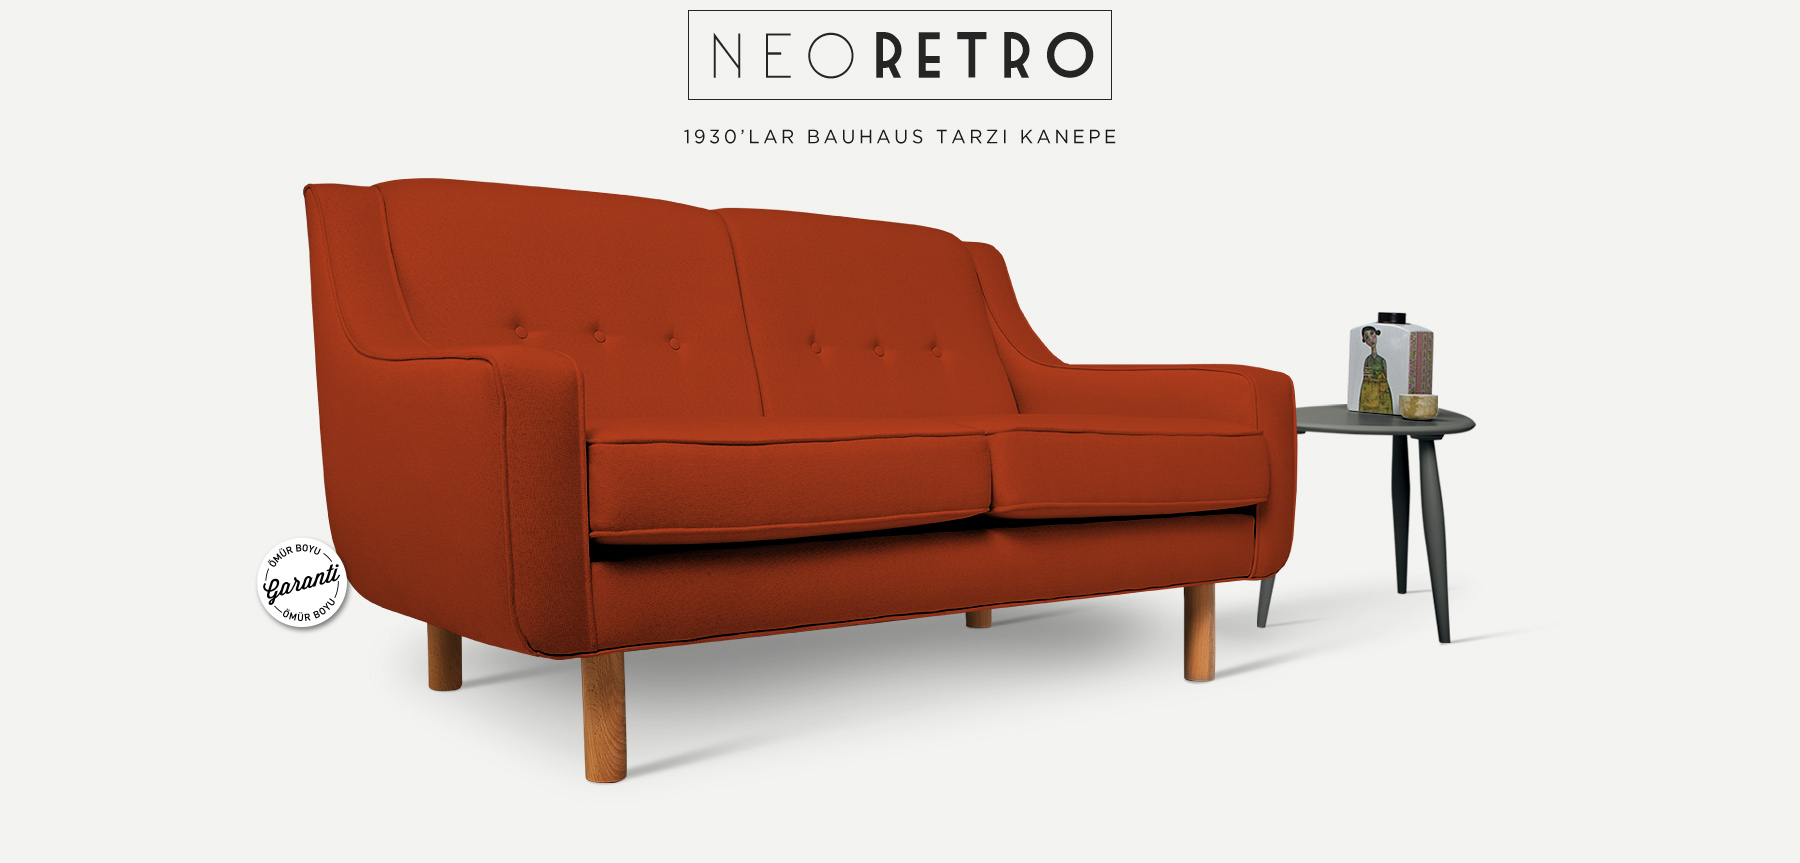 neoretro™ ikili turuncu kanepe'in resmi